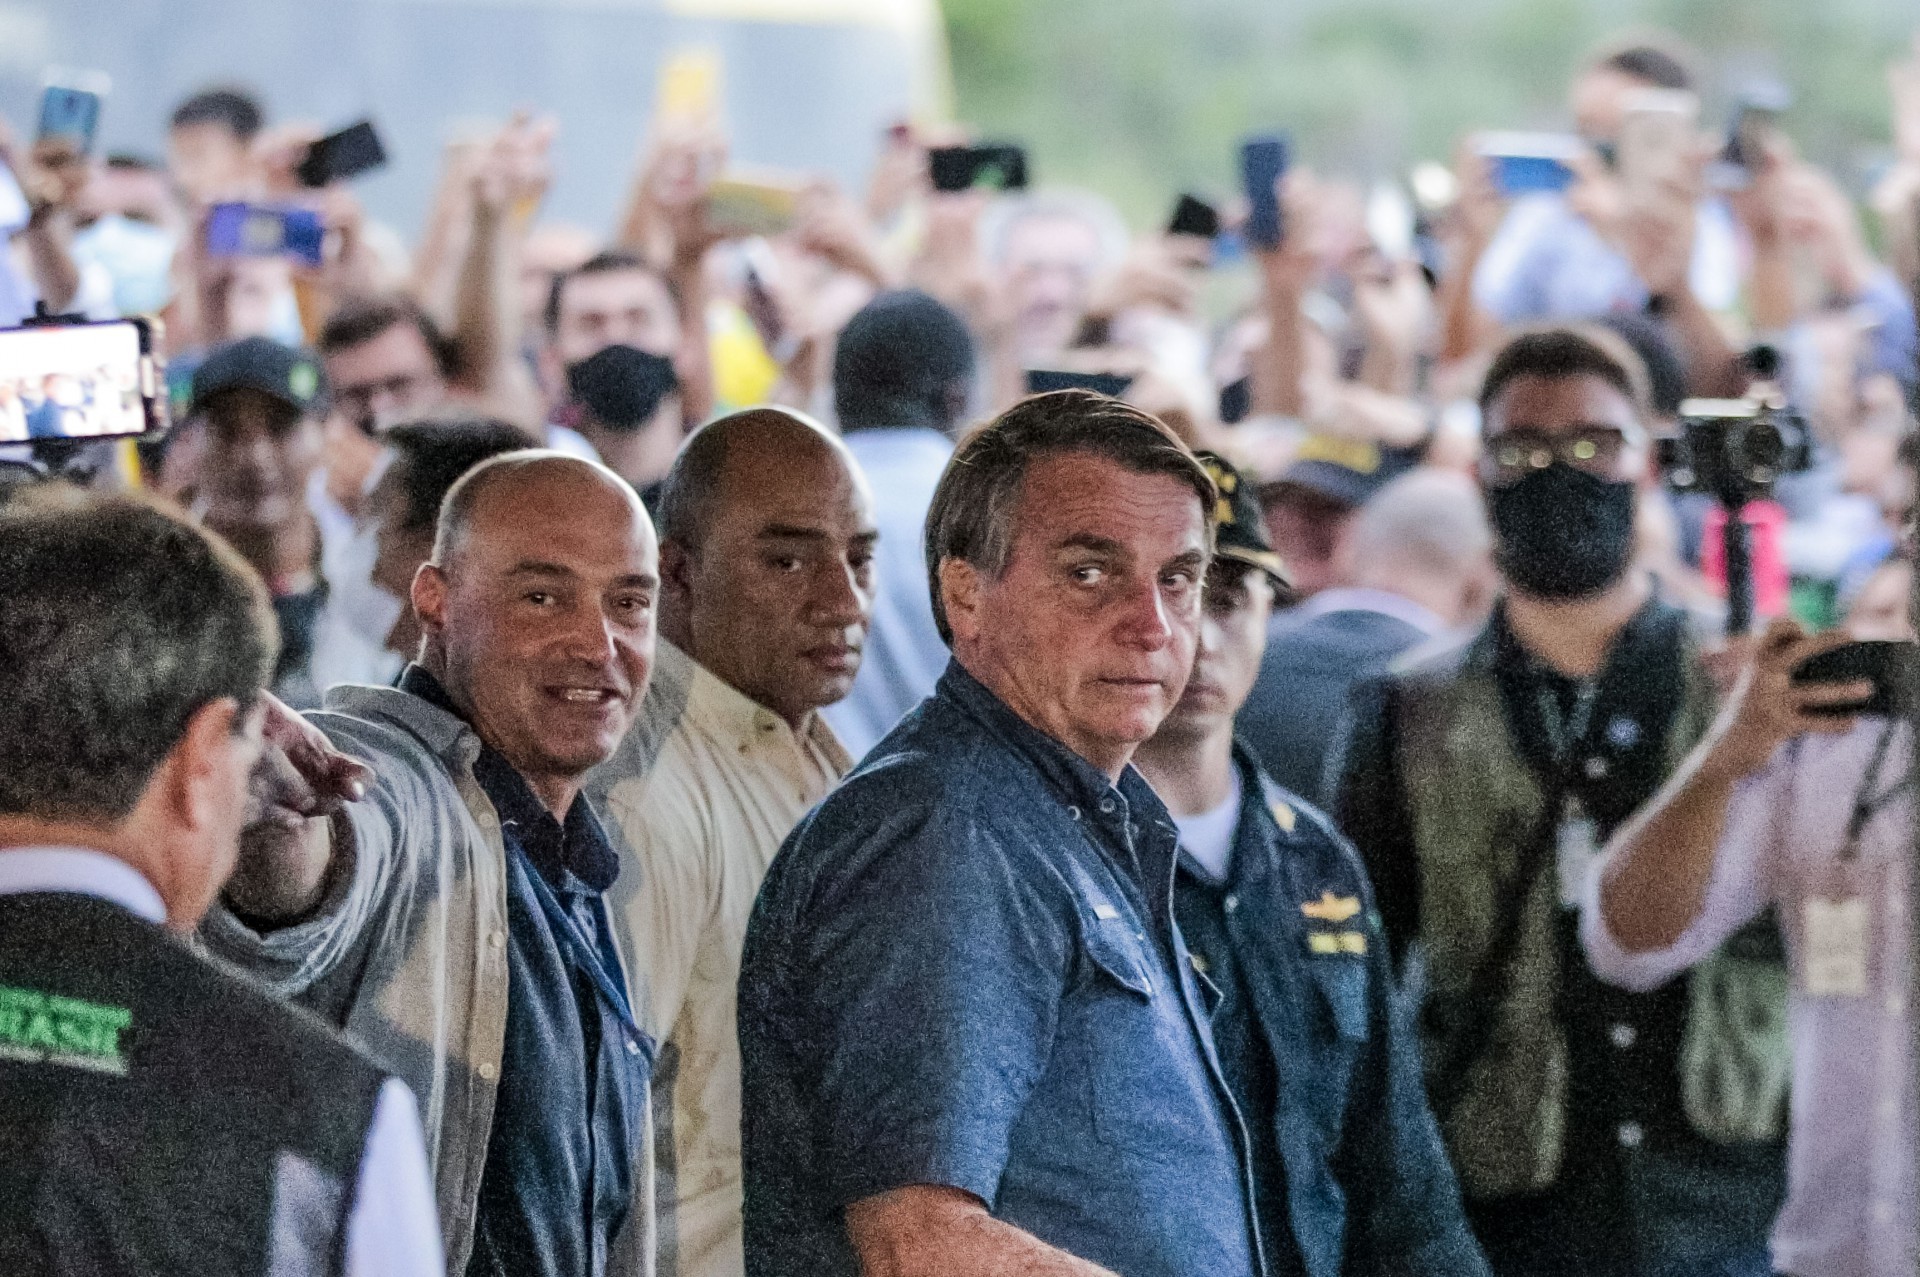 (Foto: FCO FONTENELE)Caucaia, Ceará, Brasil 26.02.21 - Presidente Jair Bolsonaro visita trecho da obra de duplicação da BR 222 no município de Caucaia (Fco Fontenele/OPOVO)